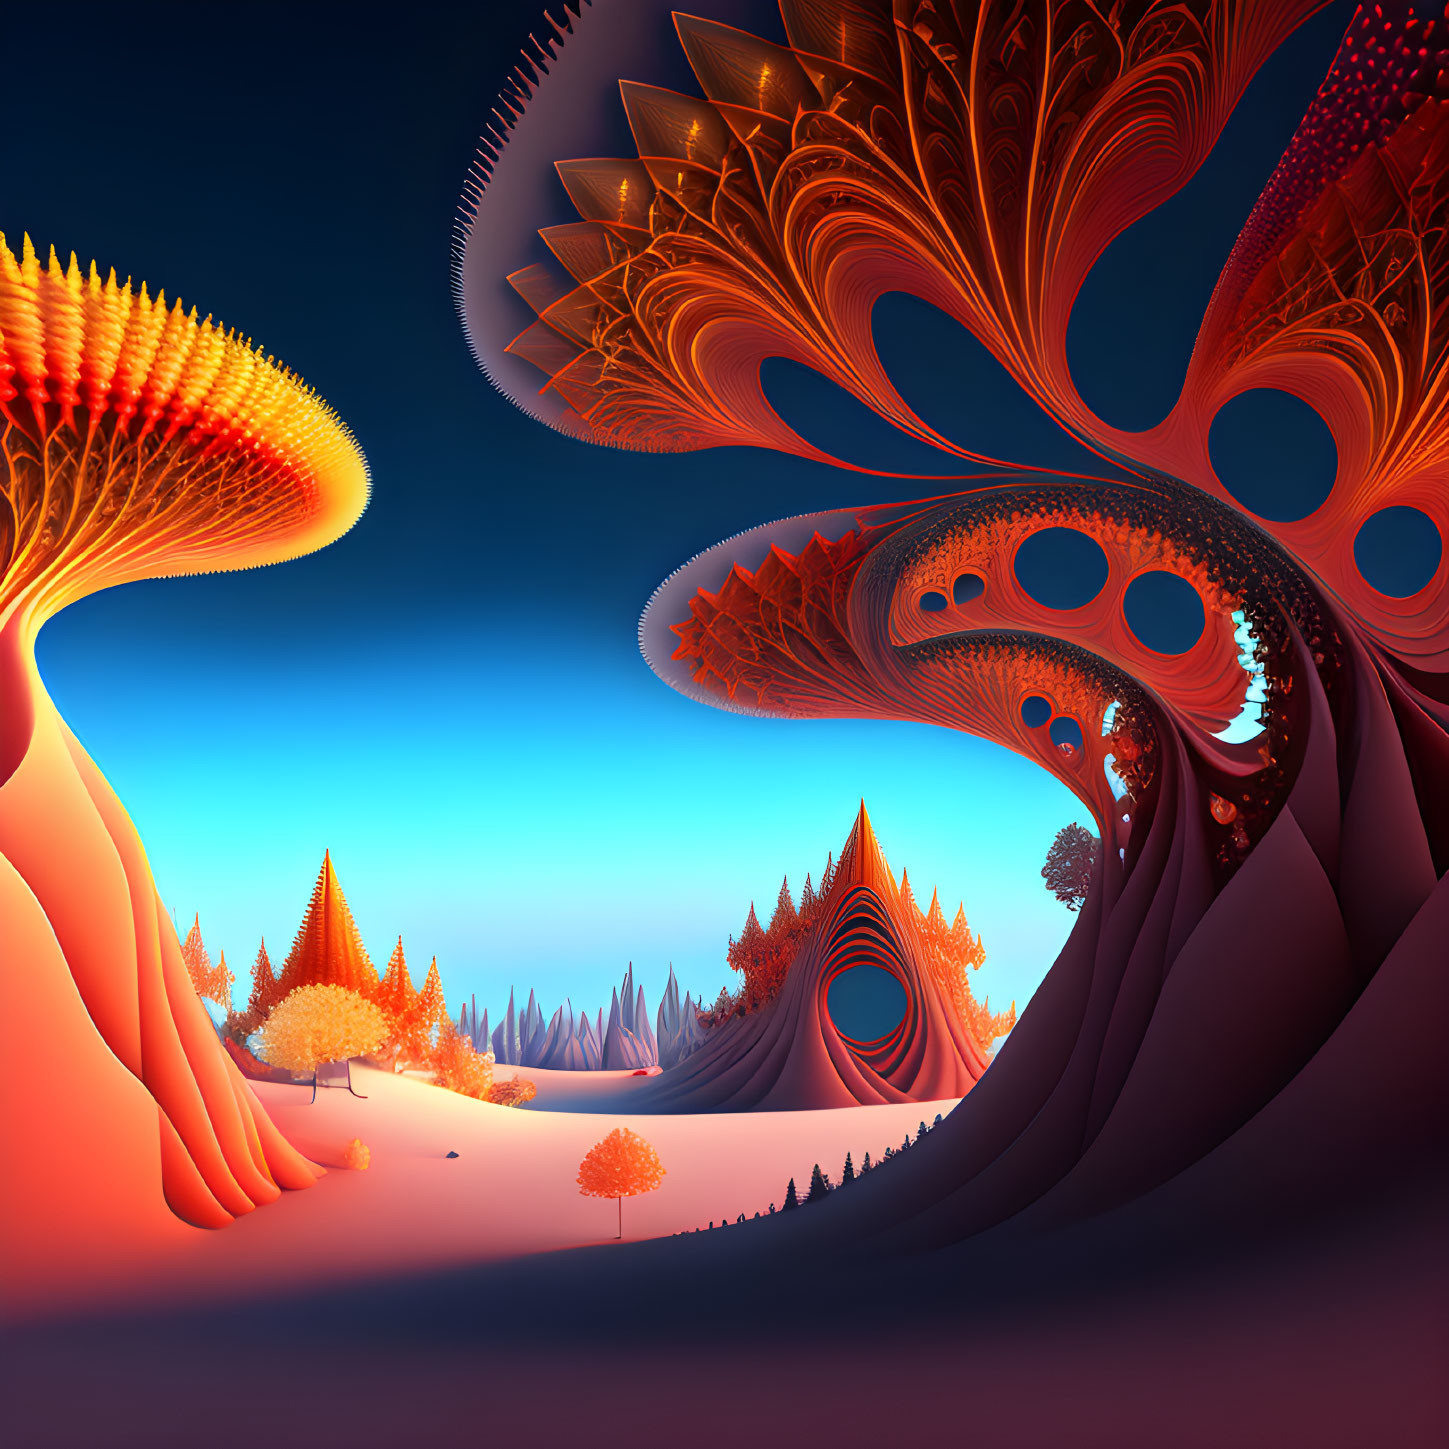 Surreal alien landscape with vibrant fractal trees under orange and blue sky